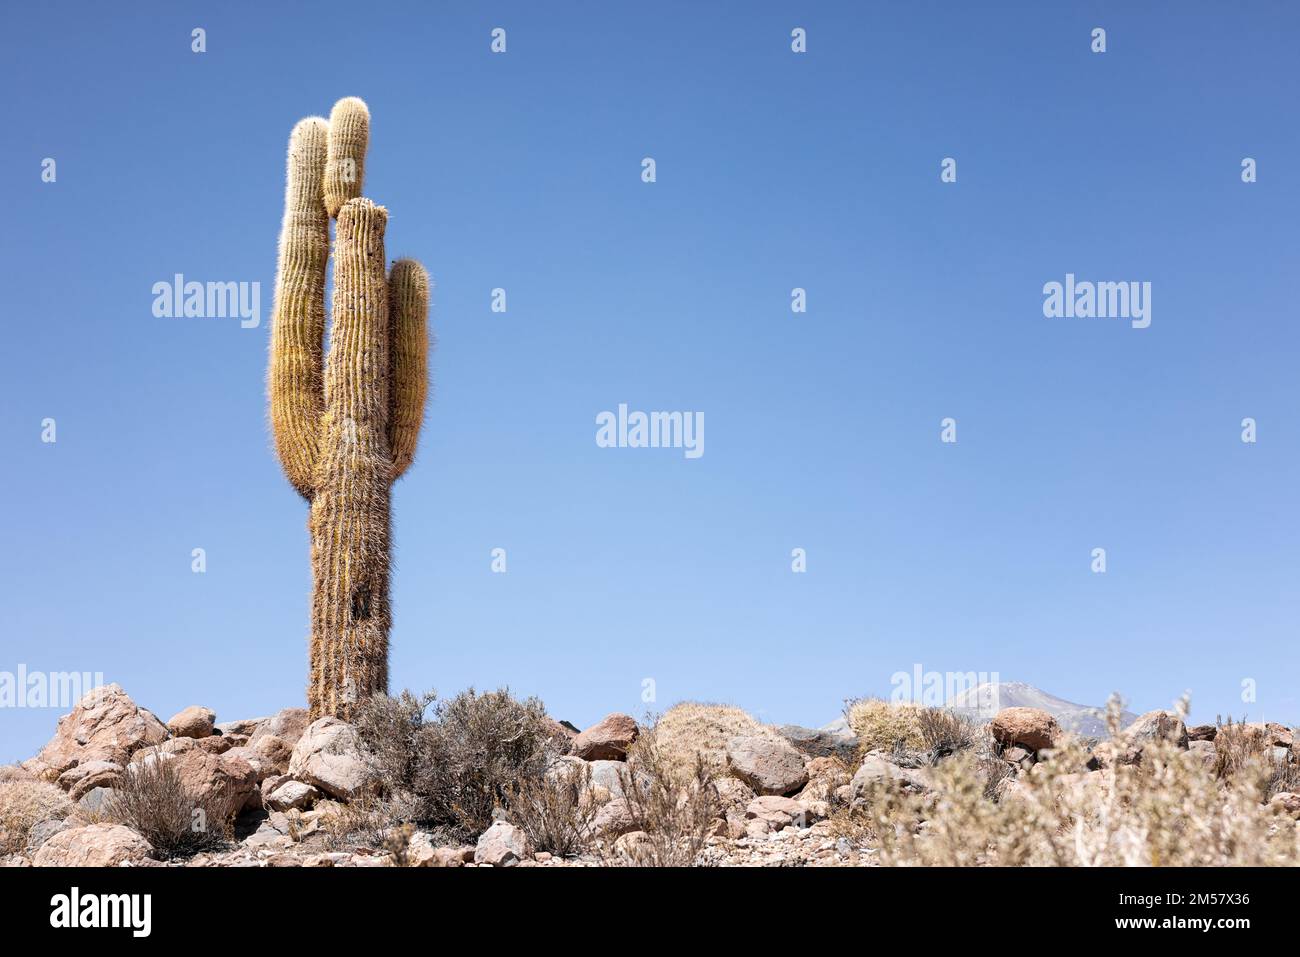 Cactus dans le désert d'Atacama - Echinopsis atacamensis sont d'énormes cactus, typiques de la flore du nord du Chili Banque D'Images